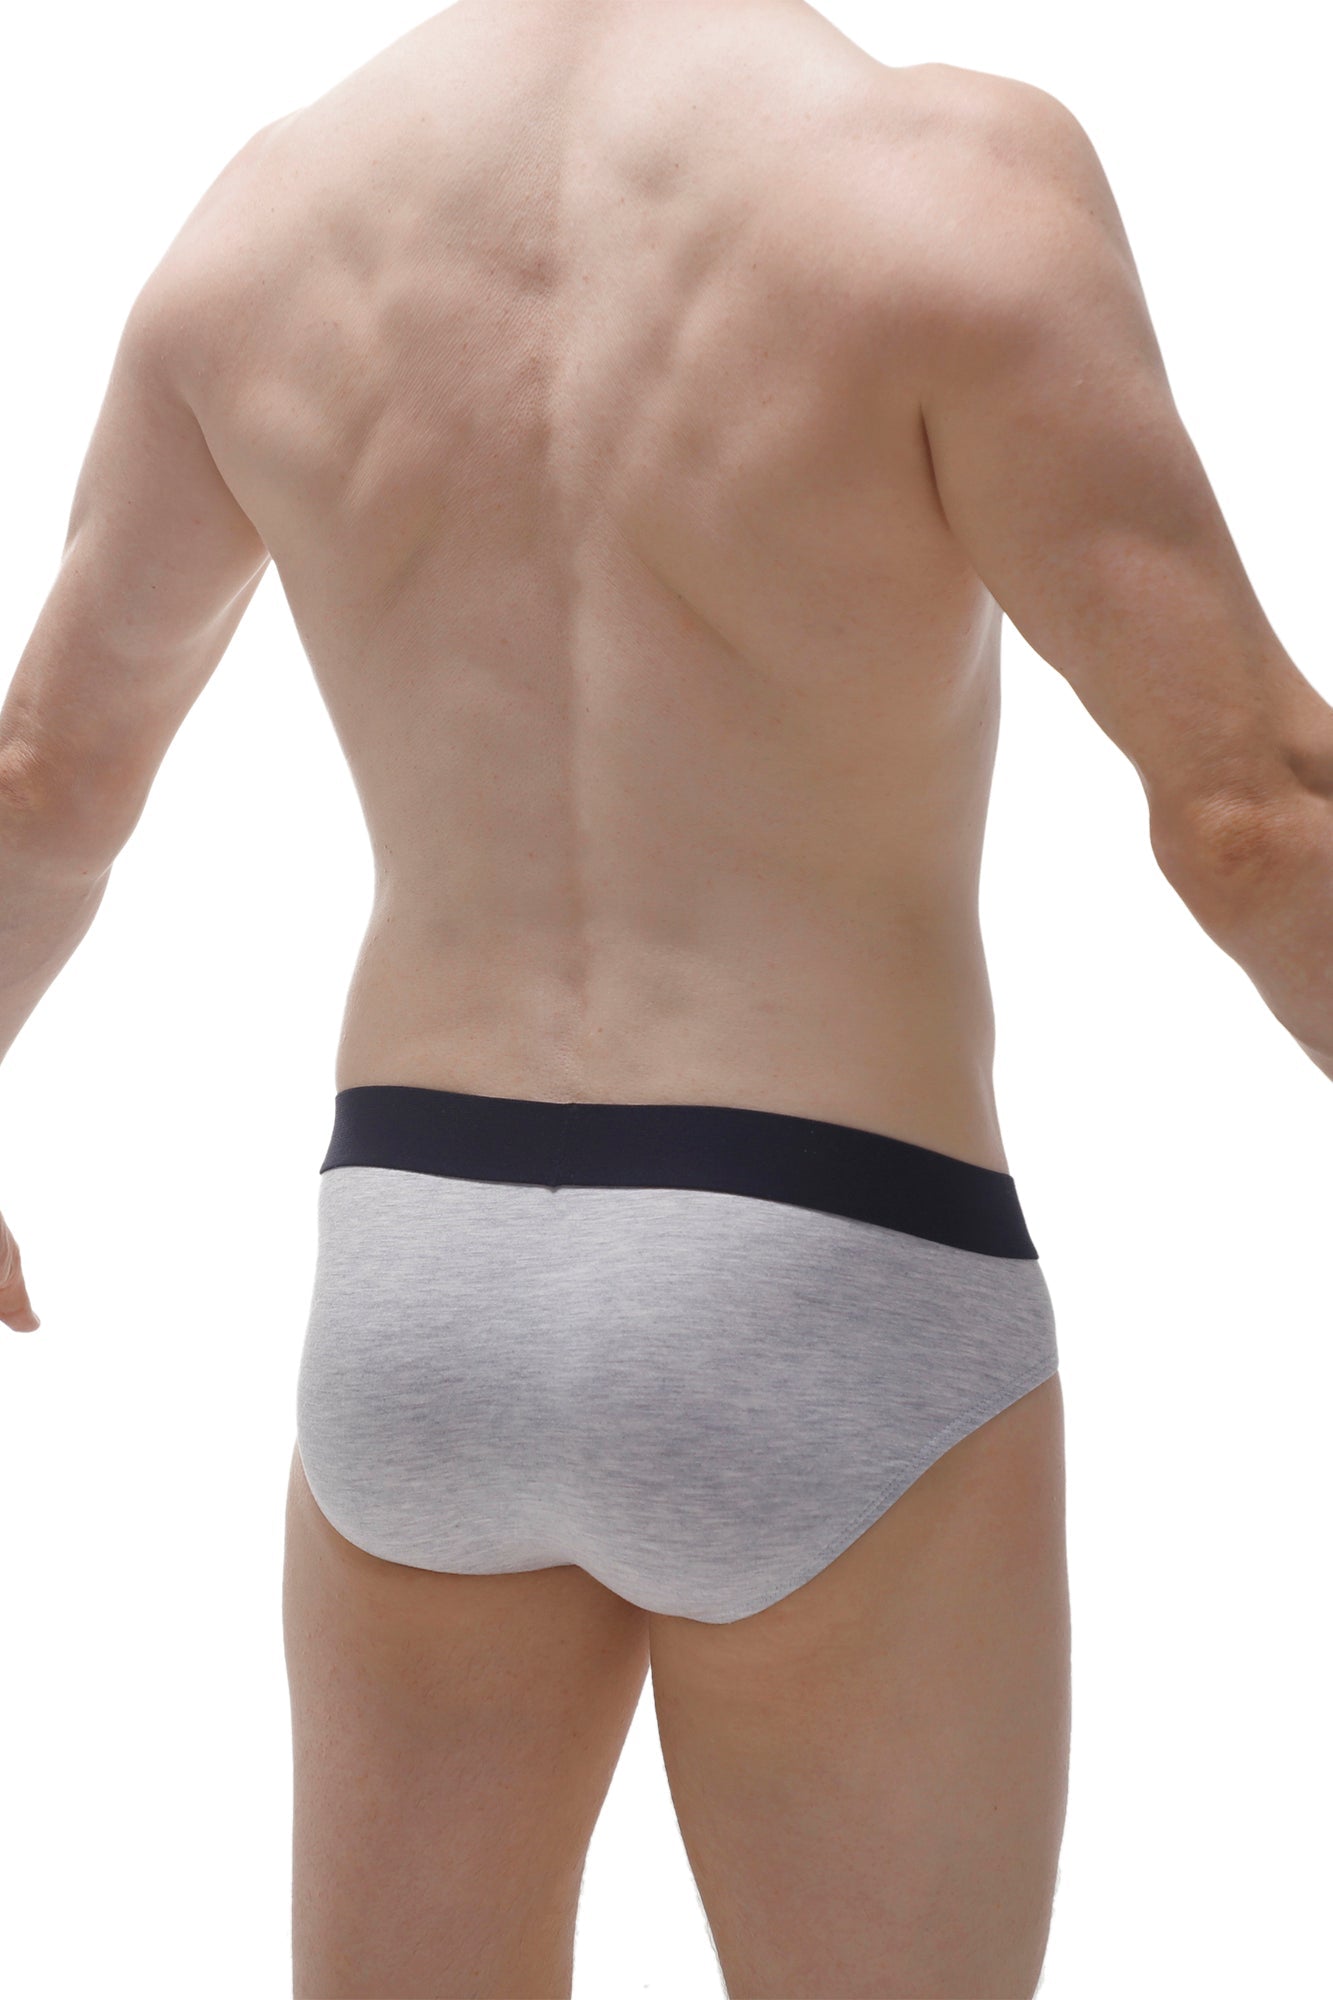 Brief Double Pouch Gray – PetitQ Underwear USA